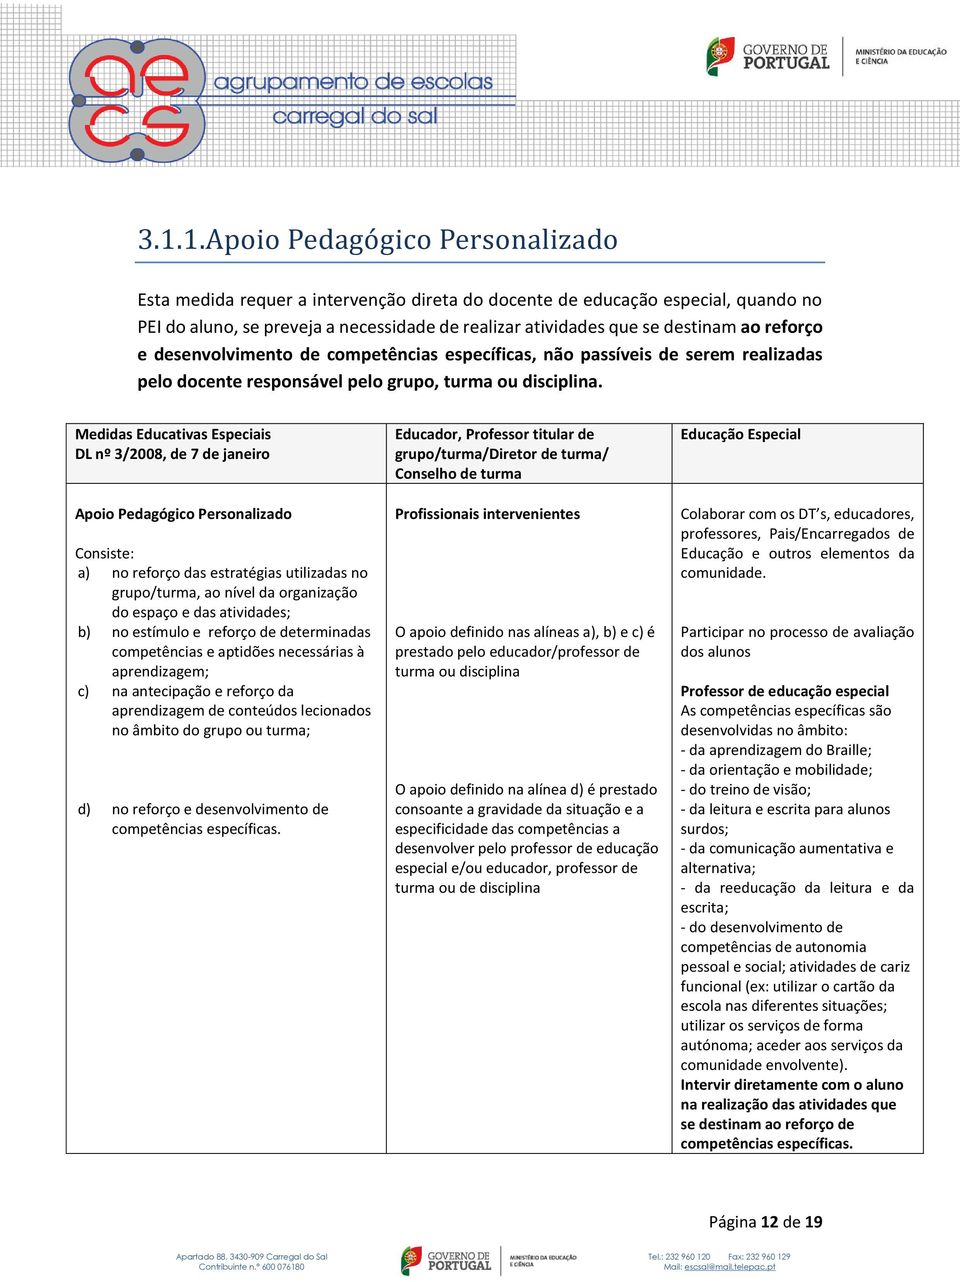 Medidas Educativas Especiais DL nº 3/2008, de 7 de janeiro Apoio Pedagógico Personalizado Consiste: a) no reforço das estratégias utilizadas no grupo/turma, ao nível da organização do espaço e das